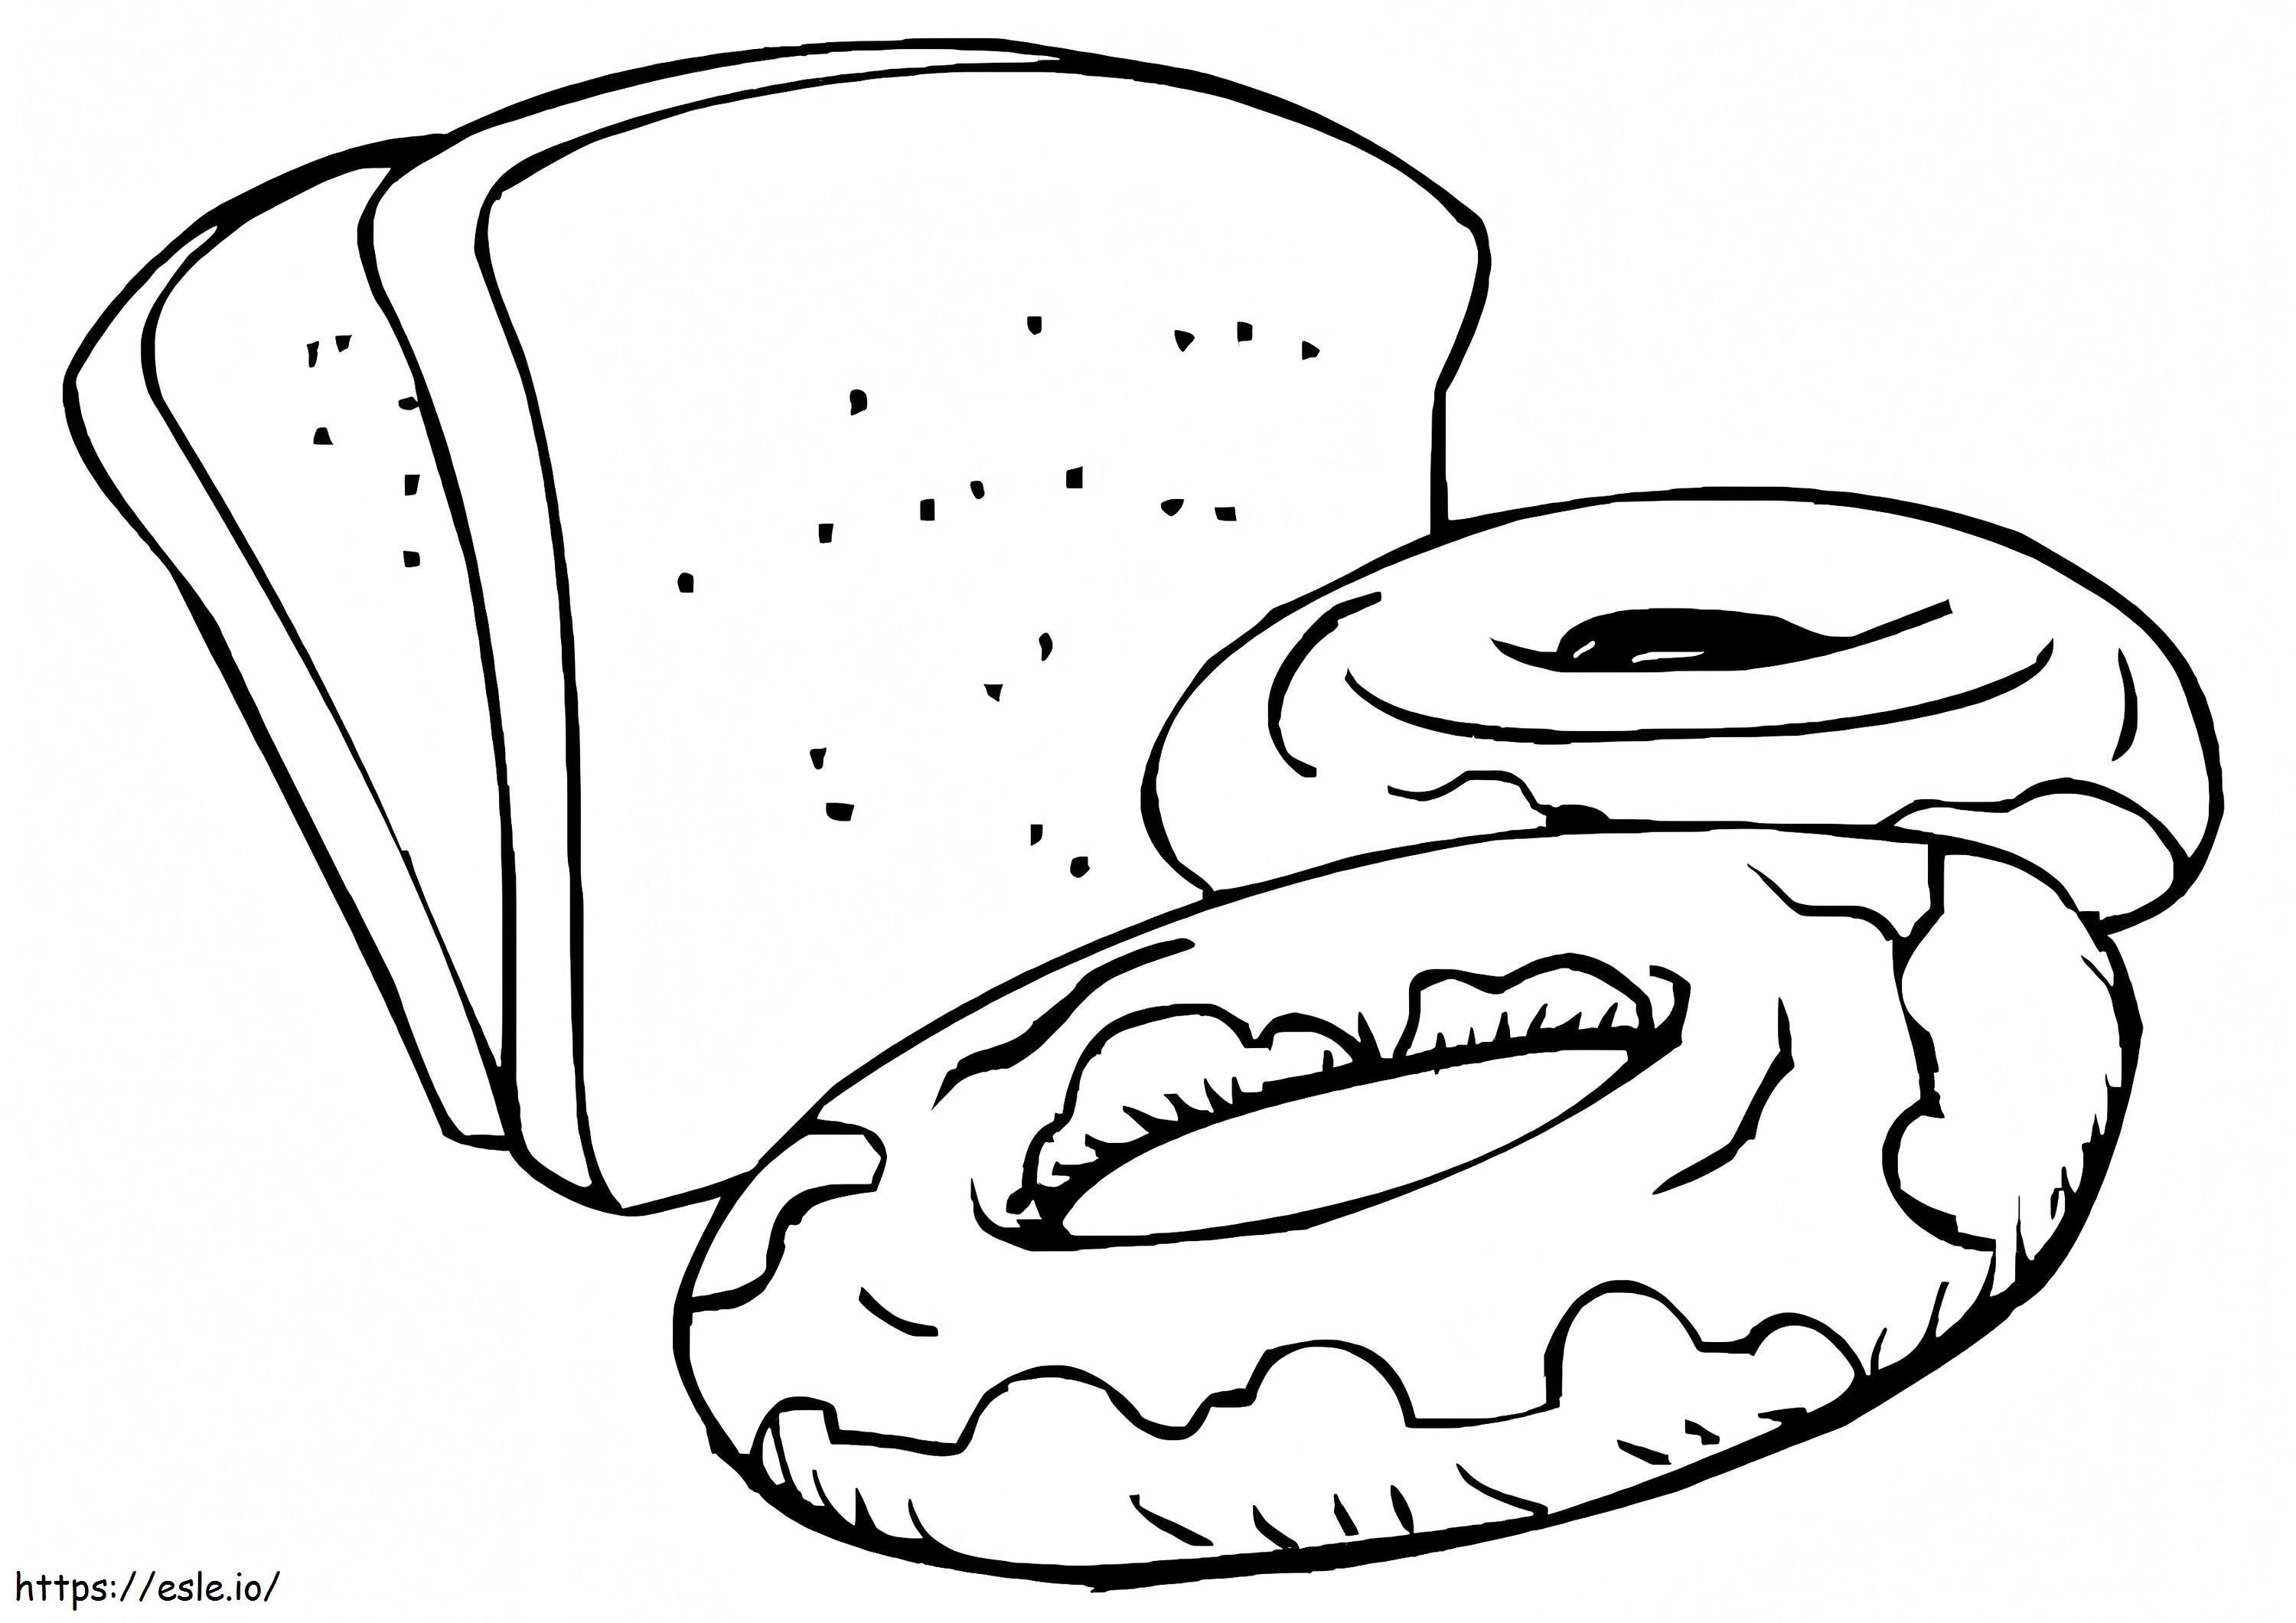 Brood En Ongezuurde broodjes kleurplaat kleurplaat